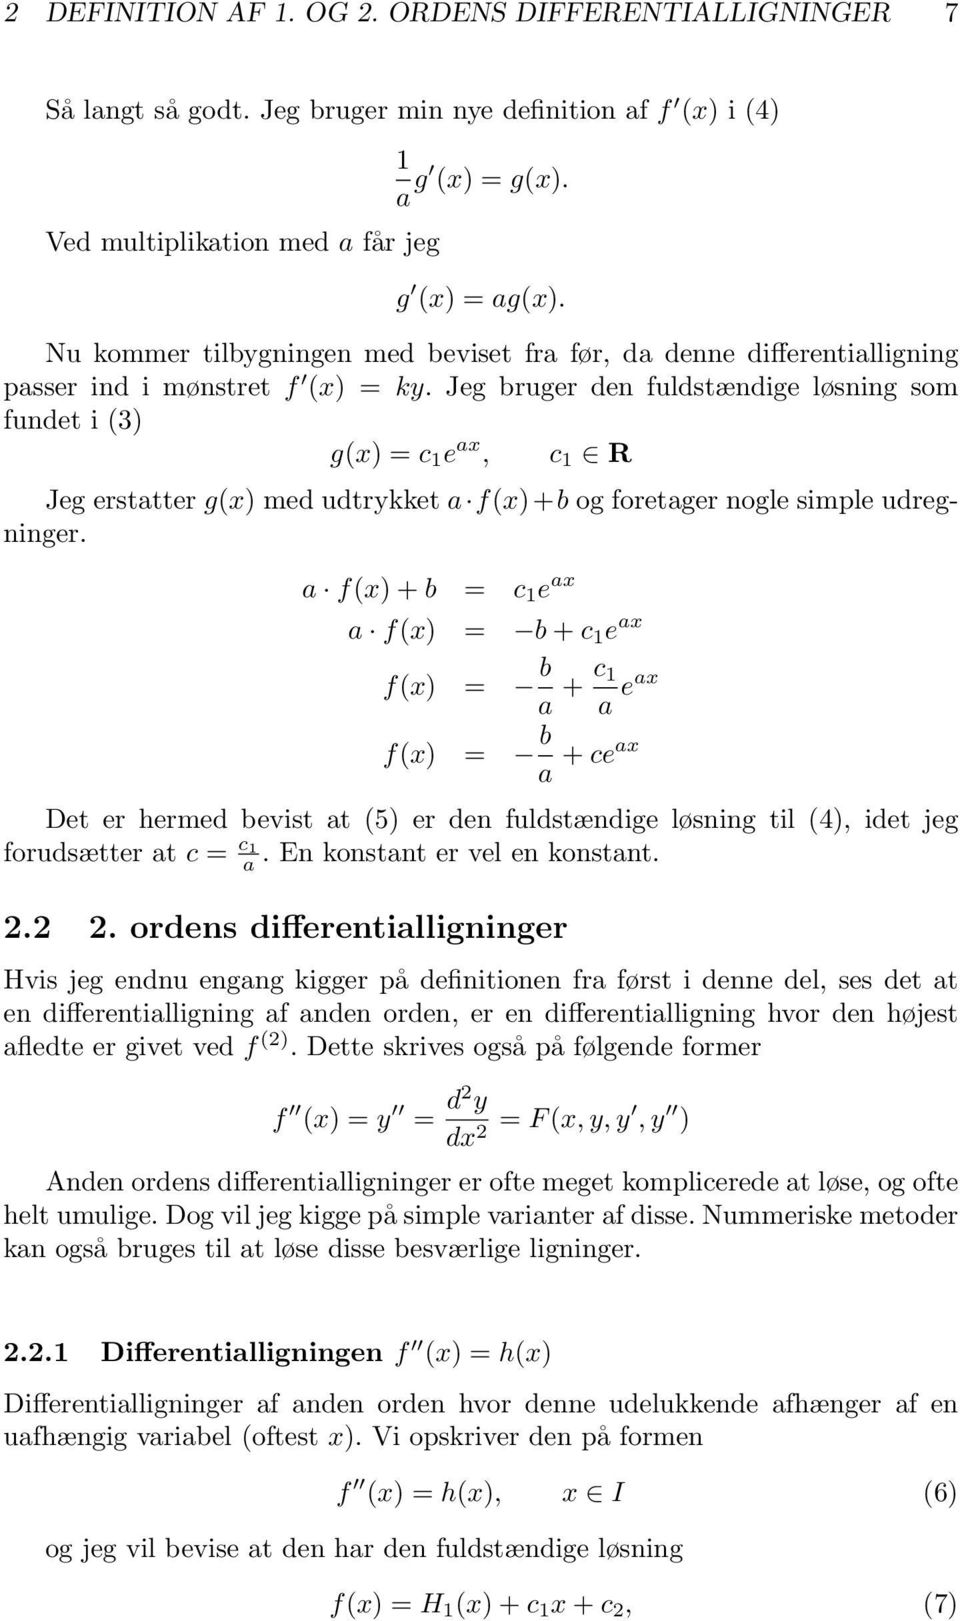 Differentialligninger og nummeriske metoder. Thomas G. Kristensen ...